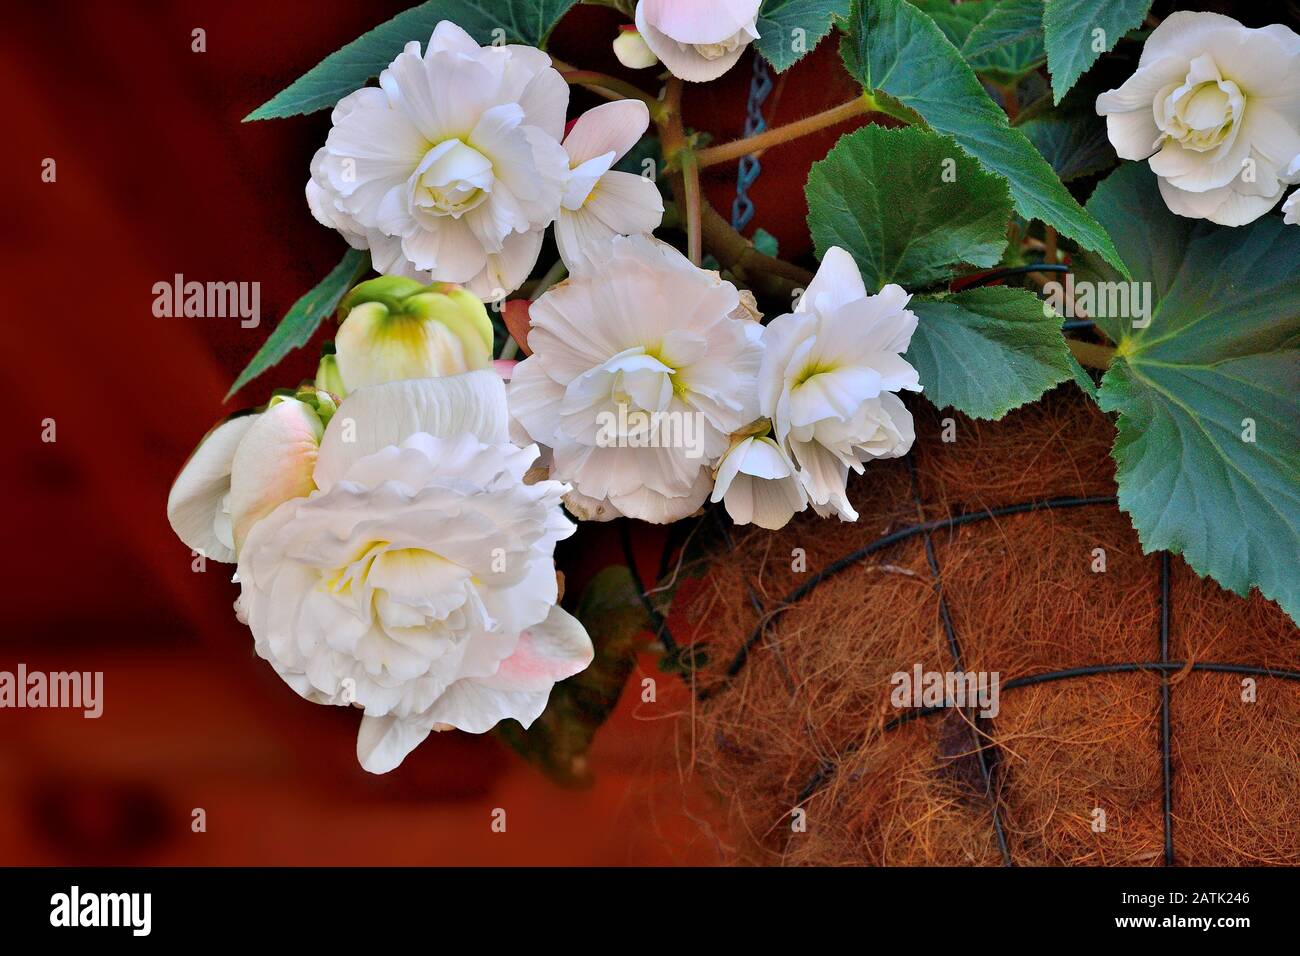 Sanfte Blumen weißer Bettler im Blumentopf schließen sich. Begonia ist eine spektakuläre und elegante, blühende Zierpflanze für Garten, Hausflorikultur Stockfoto